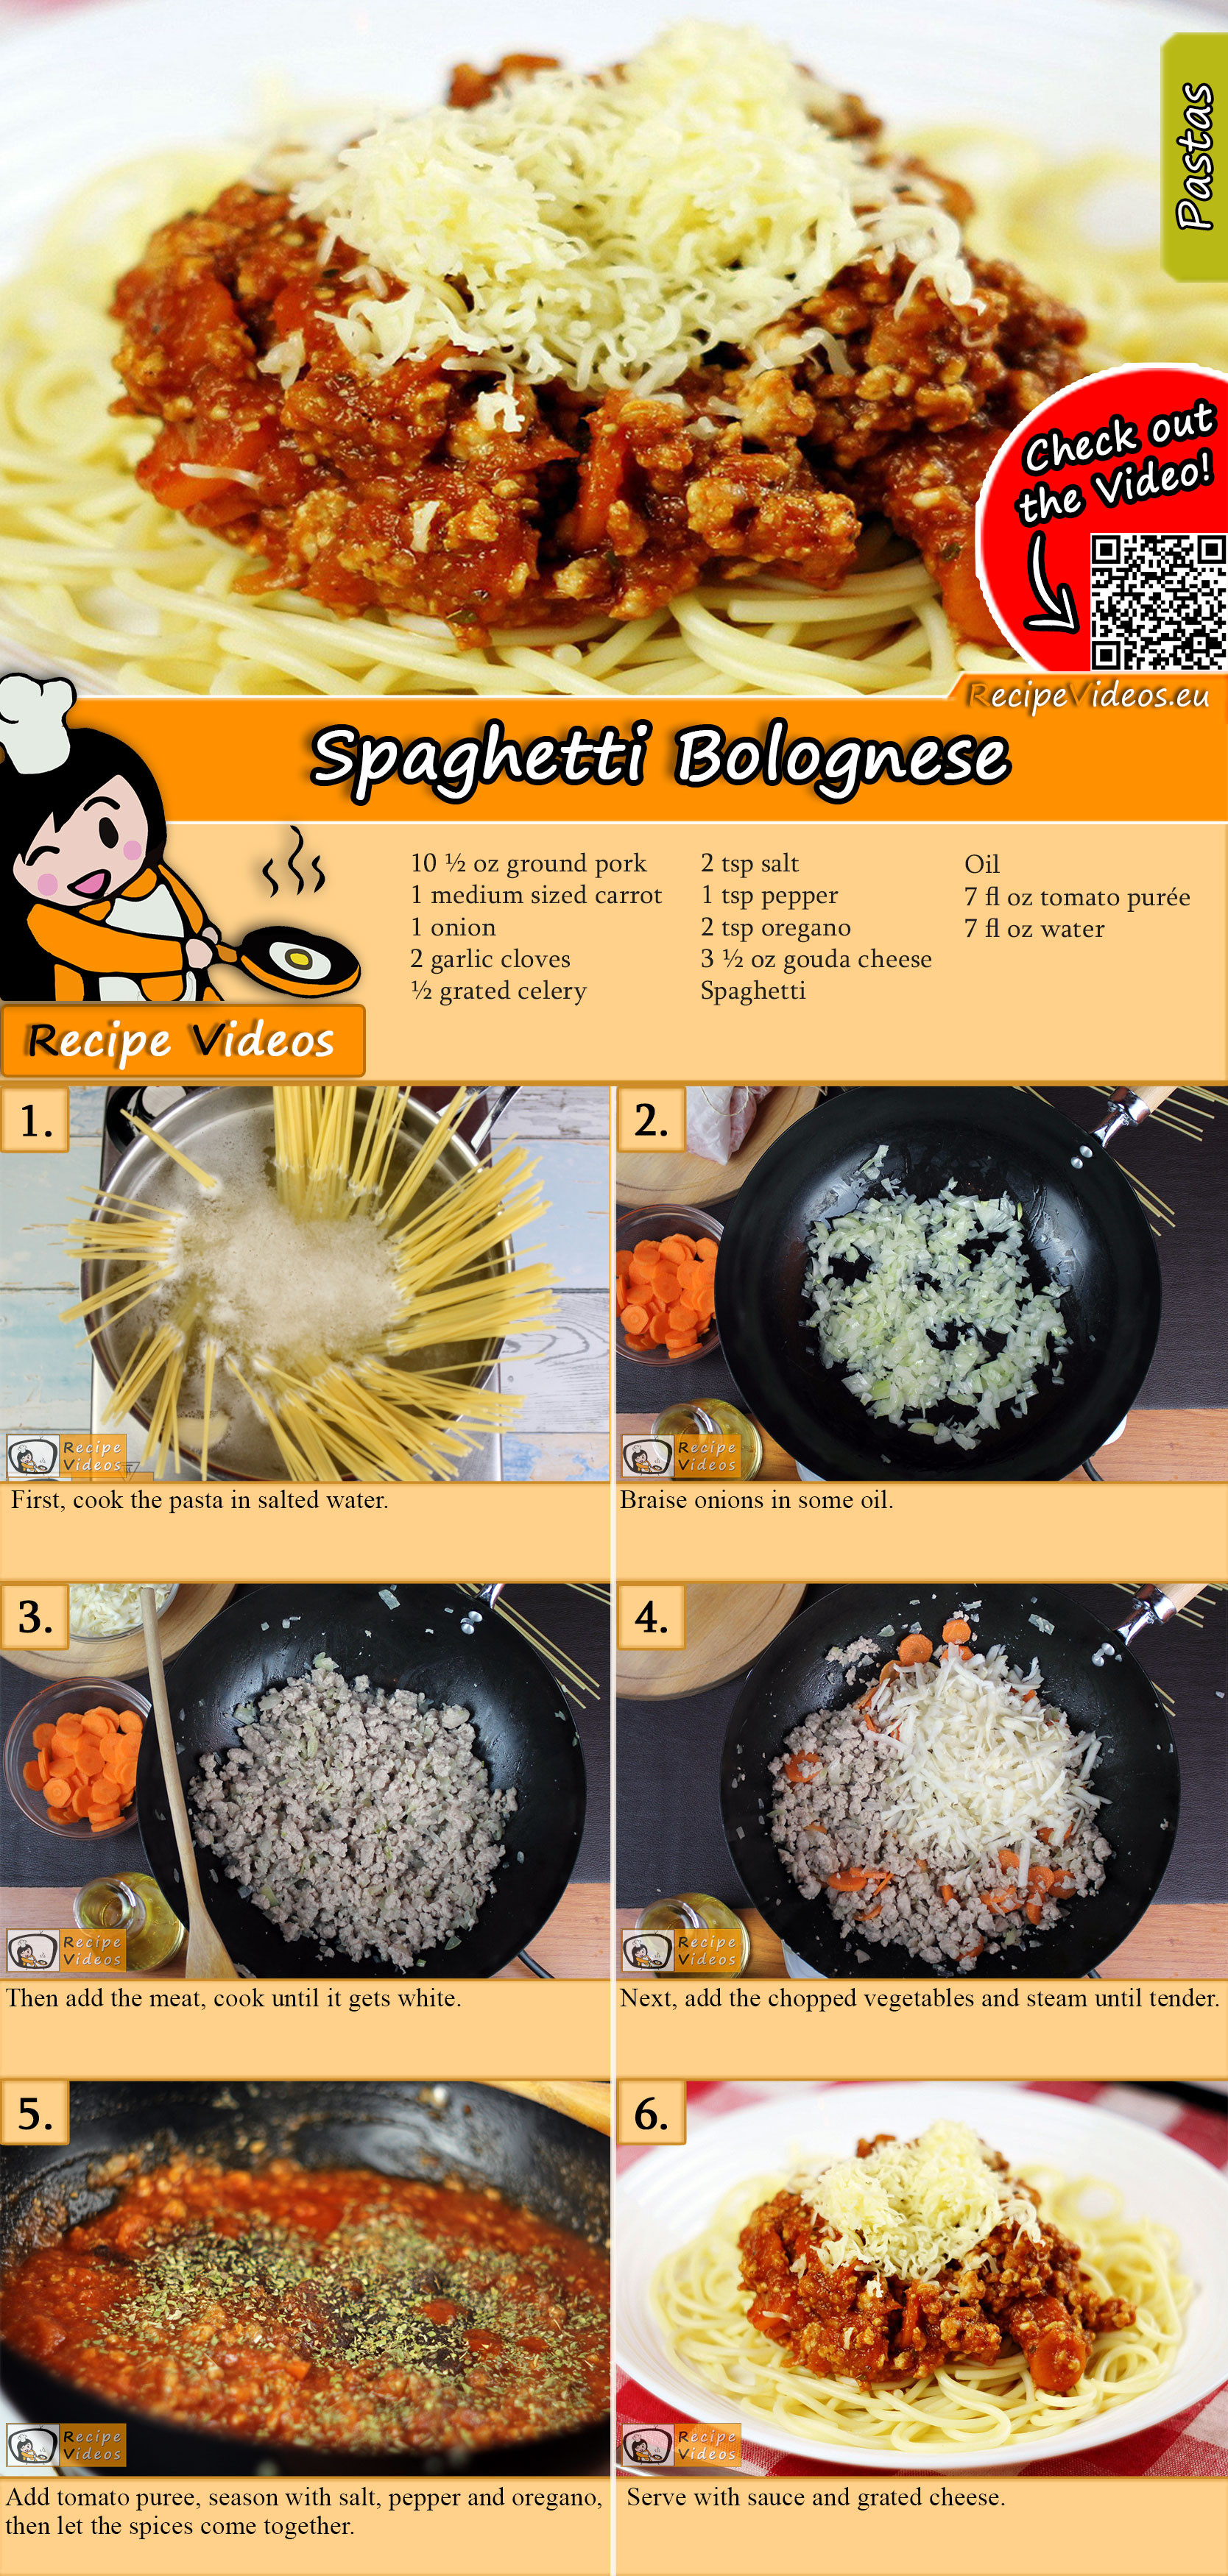 Spaghetti Bolognese recipe with video